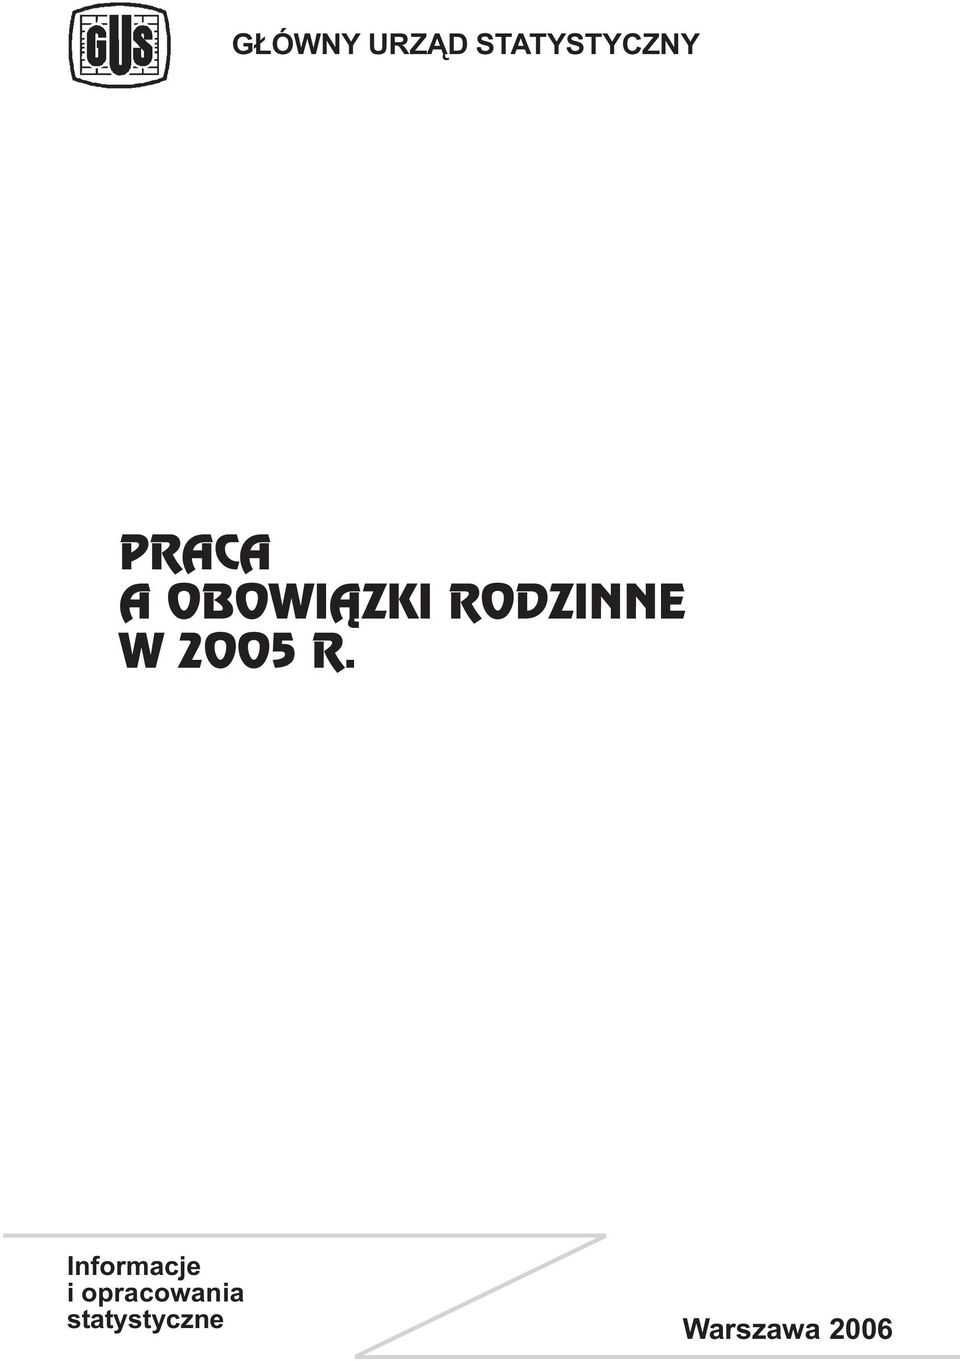 2005 R.